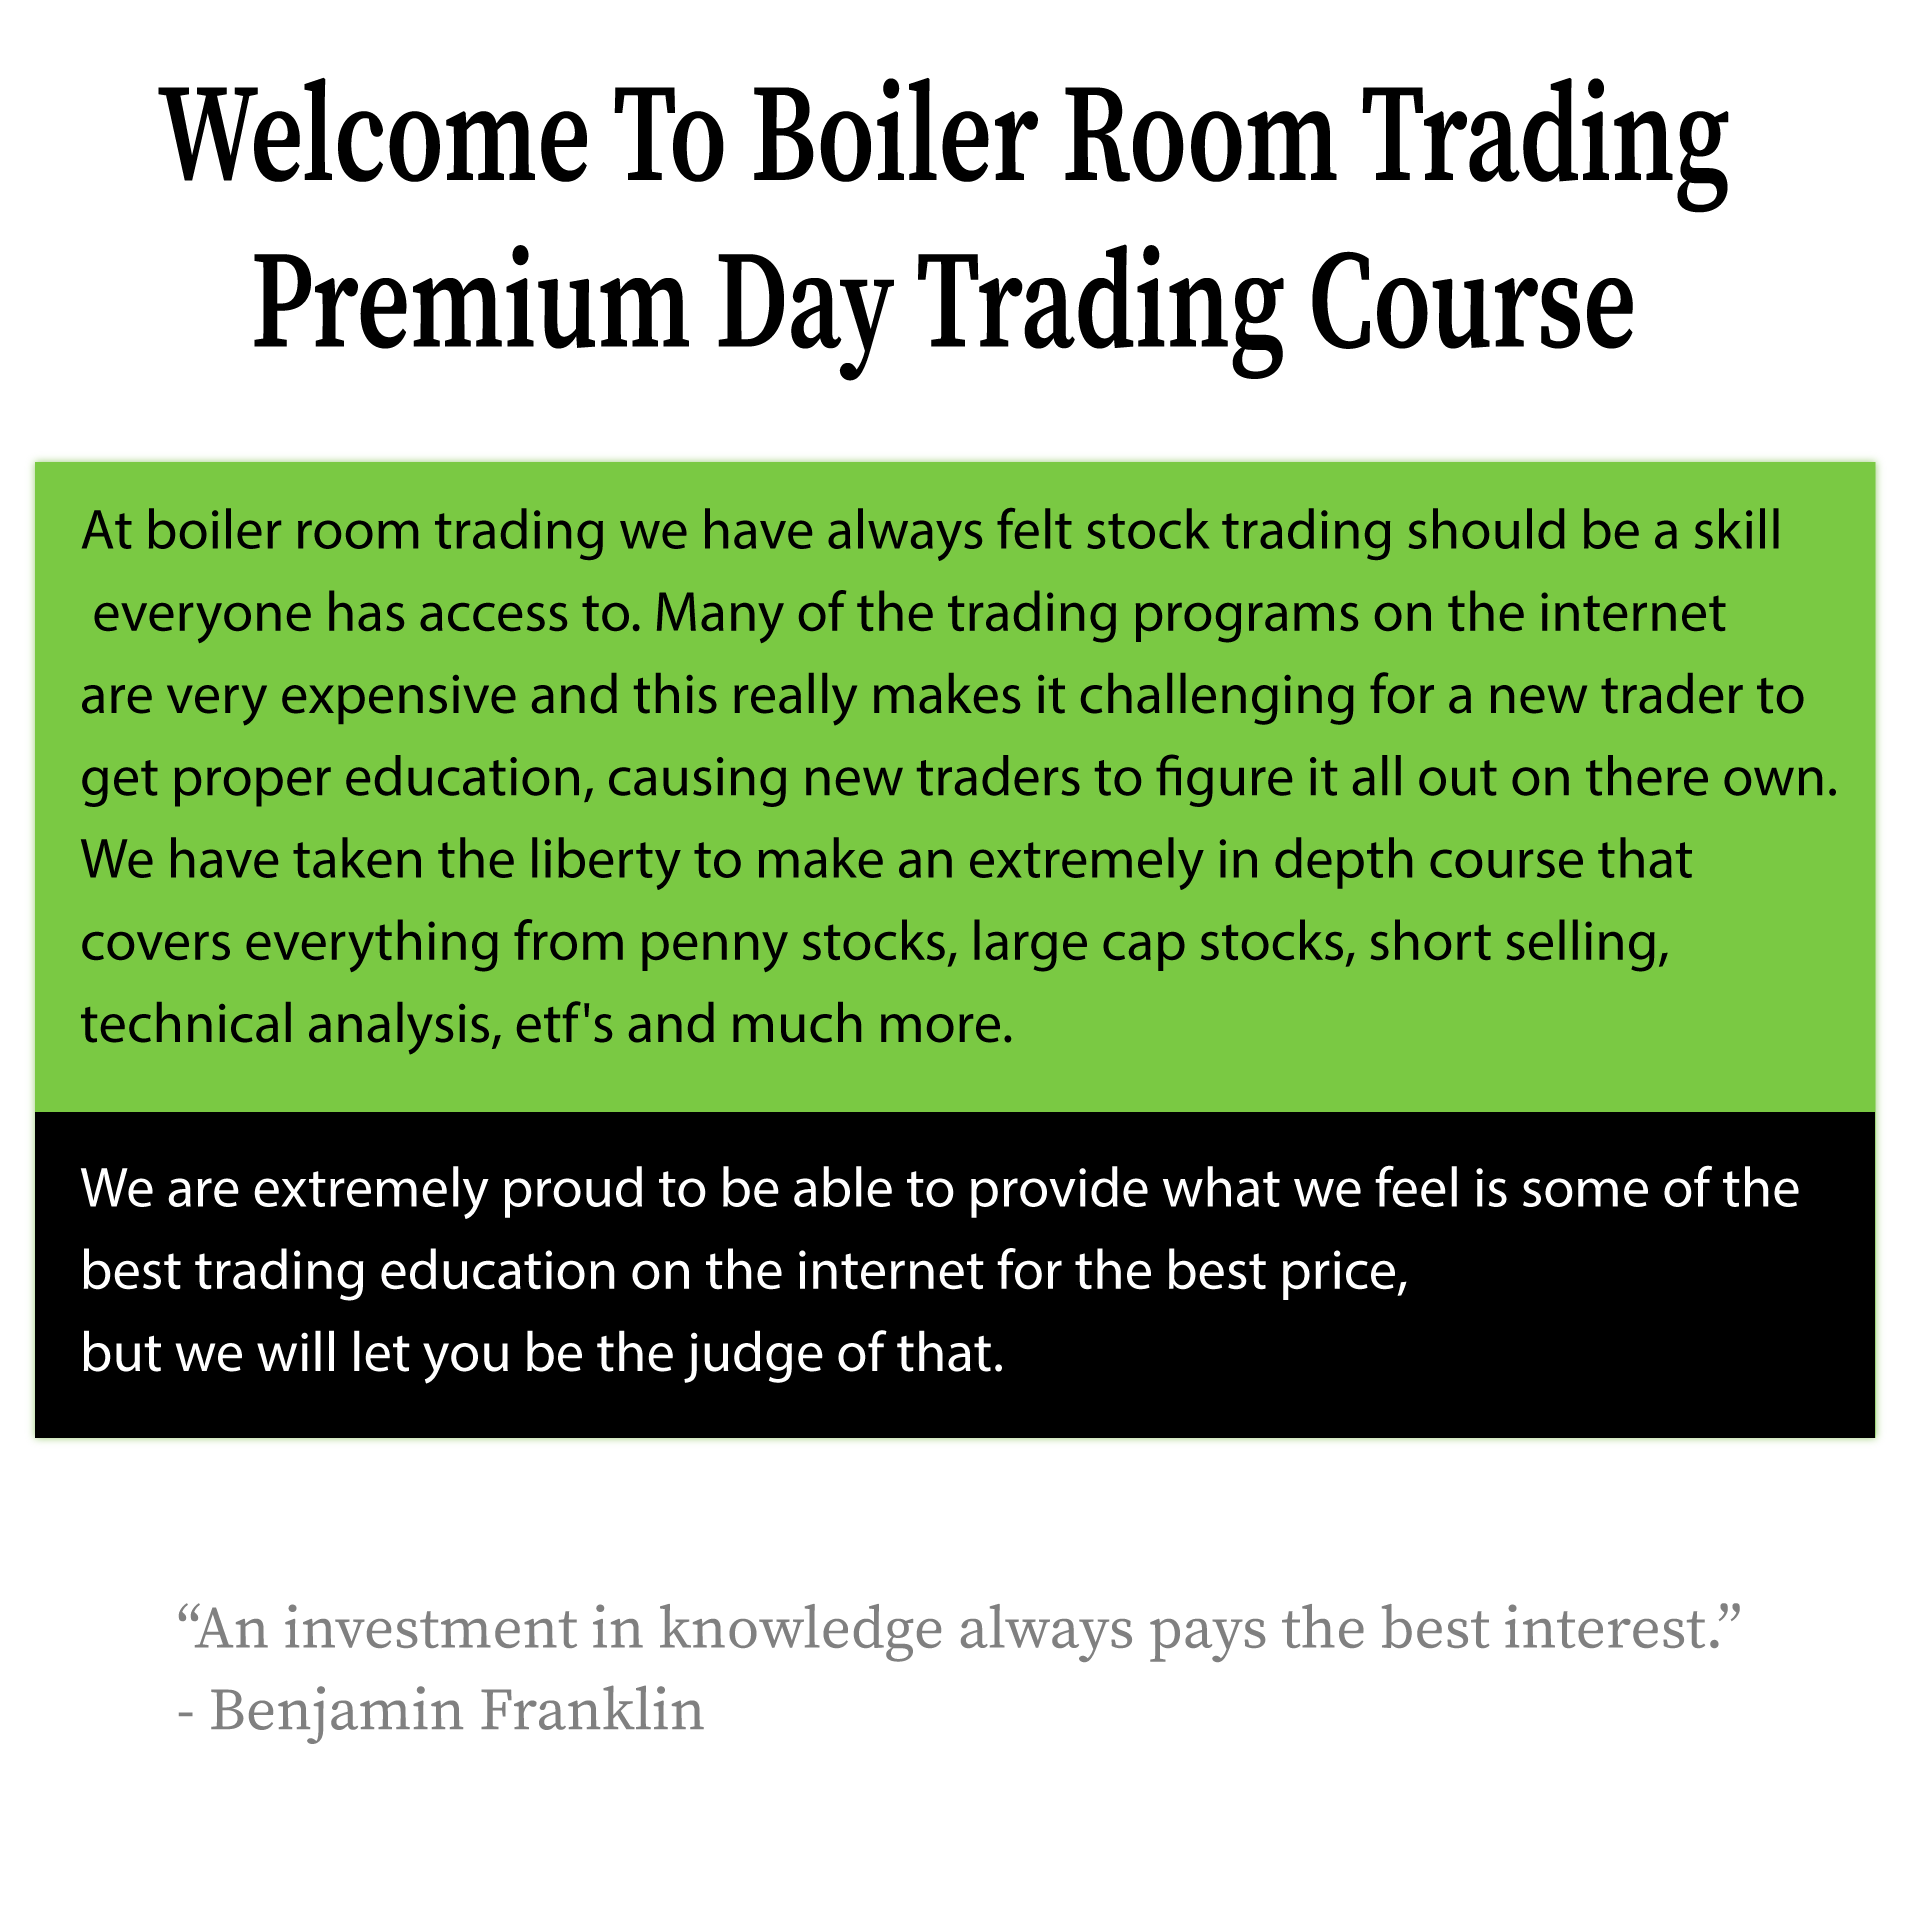 Boiler Room Trading Course | Boiler Room Trading